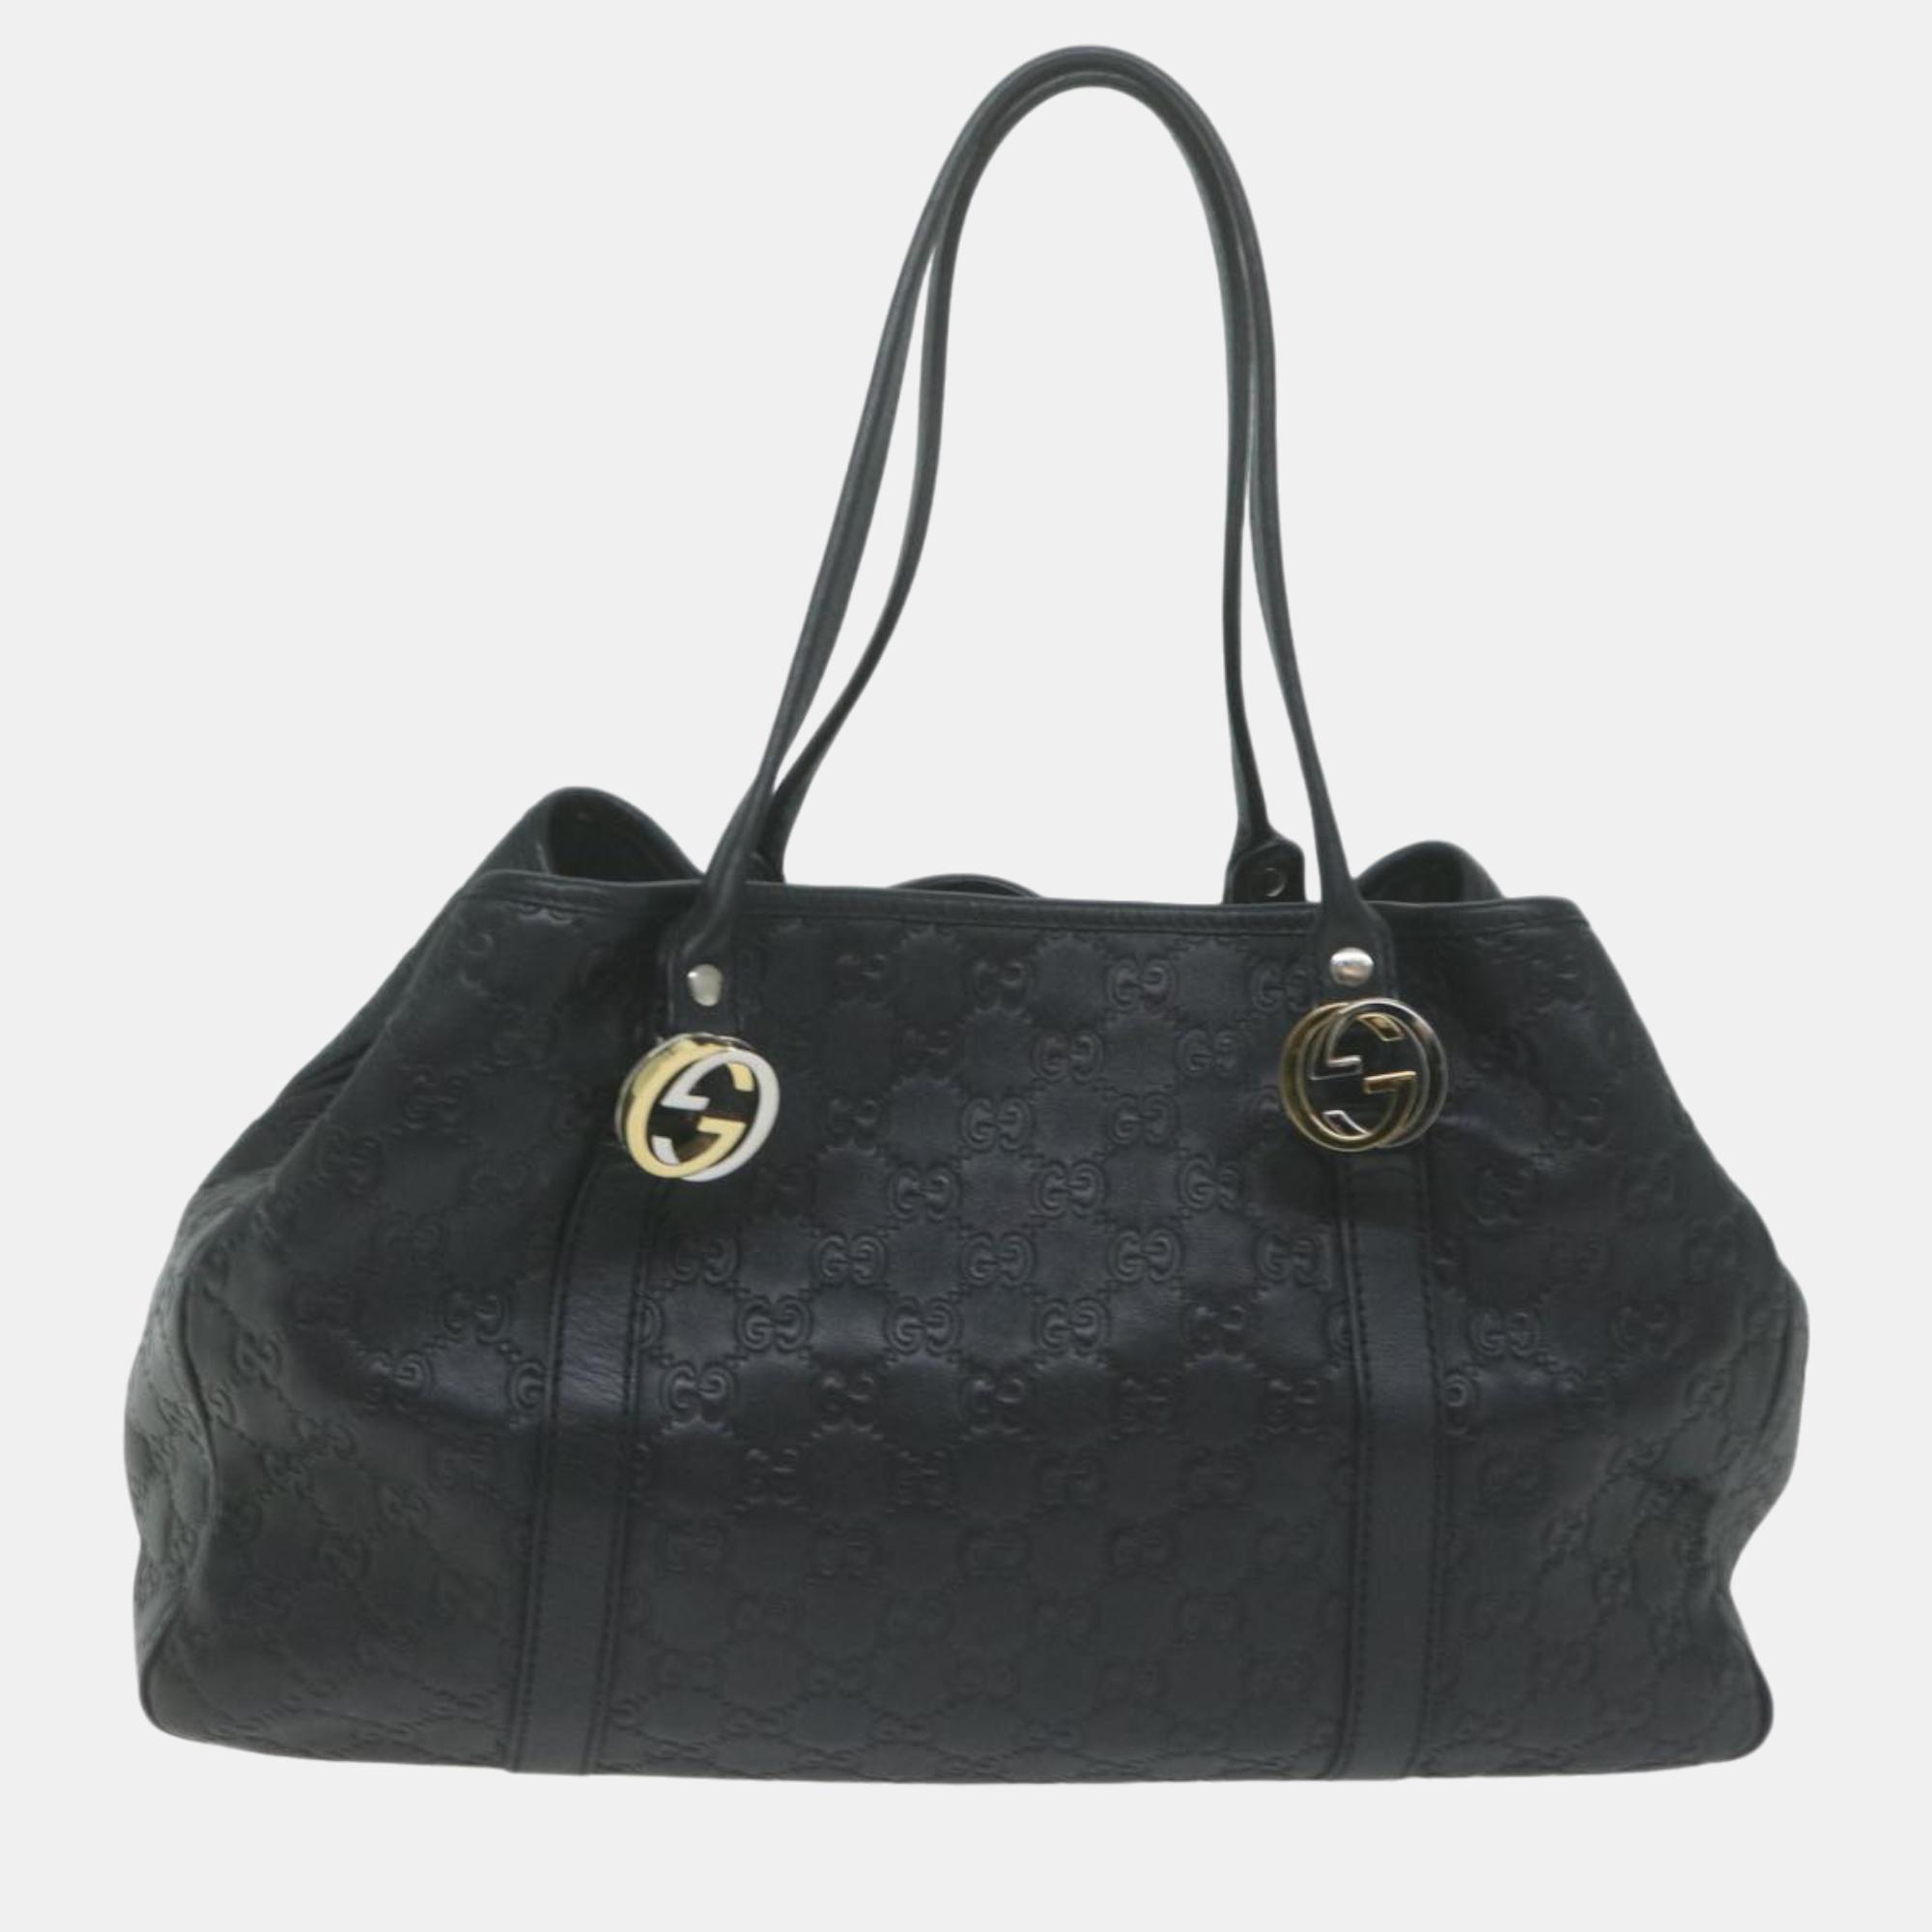 Gucci black gg canvas tote bag